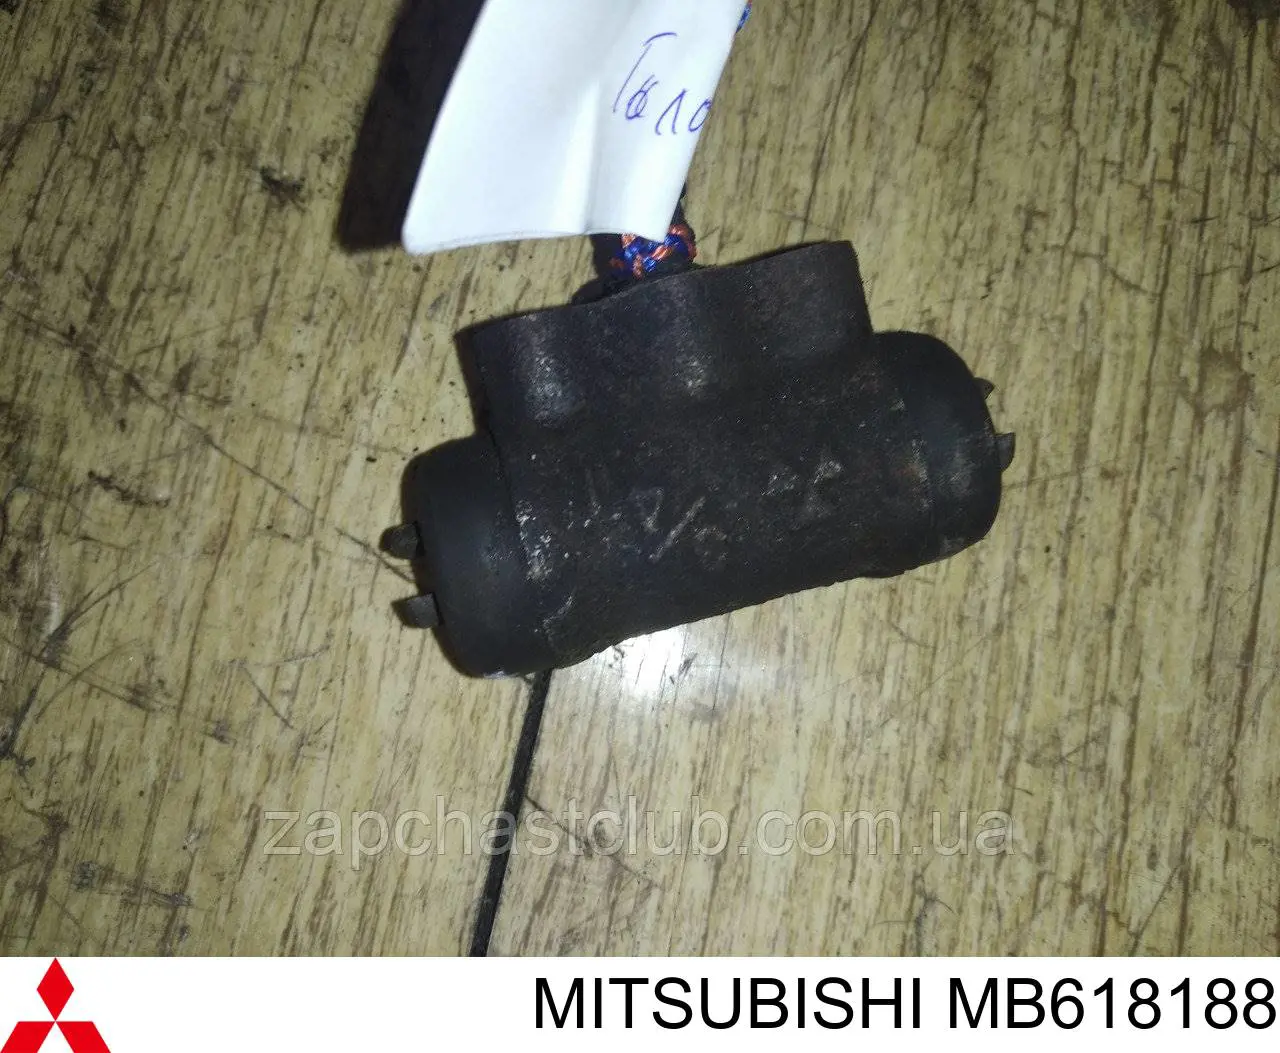 MB618188 Mitsubishi цилиндр тормозной колесный рабочий задний